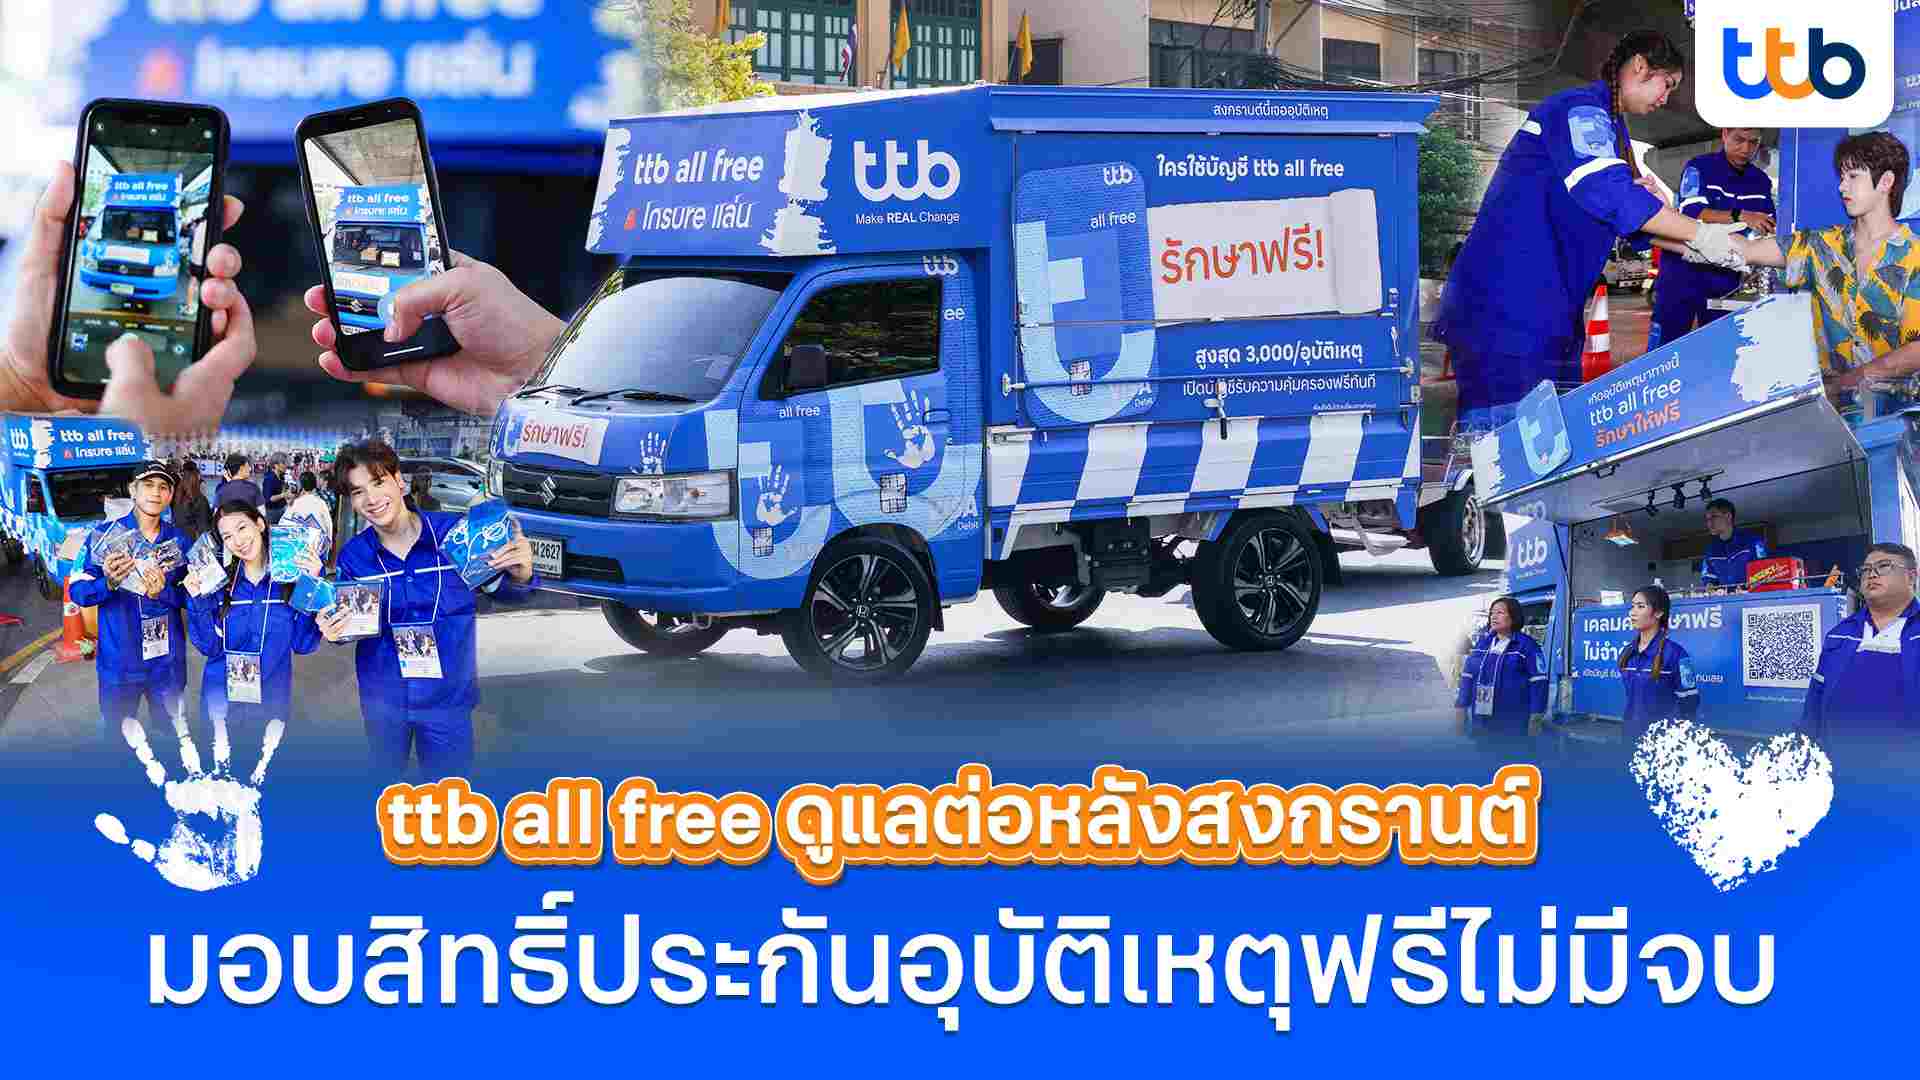 บัญชี ttb all free พร้อมดูแลต่อหลังสงกรานต์มอบสิทธิ์ประกันอุบัติเหตุฟรีให้คนไทย